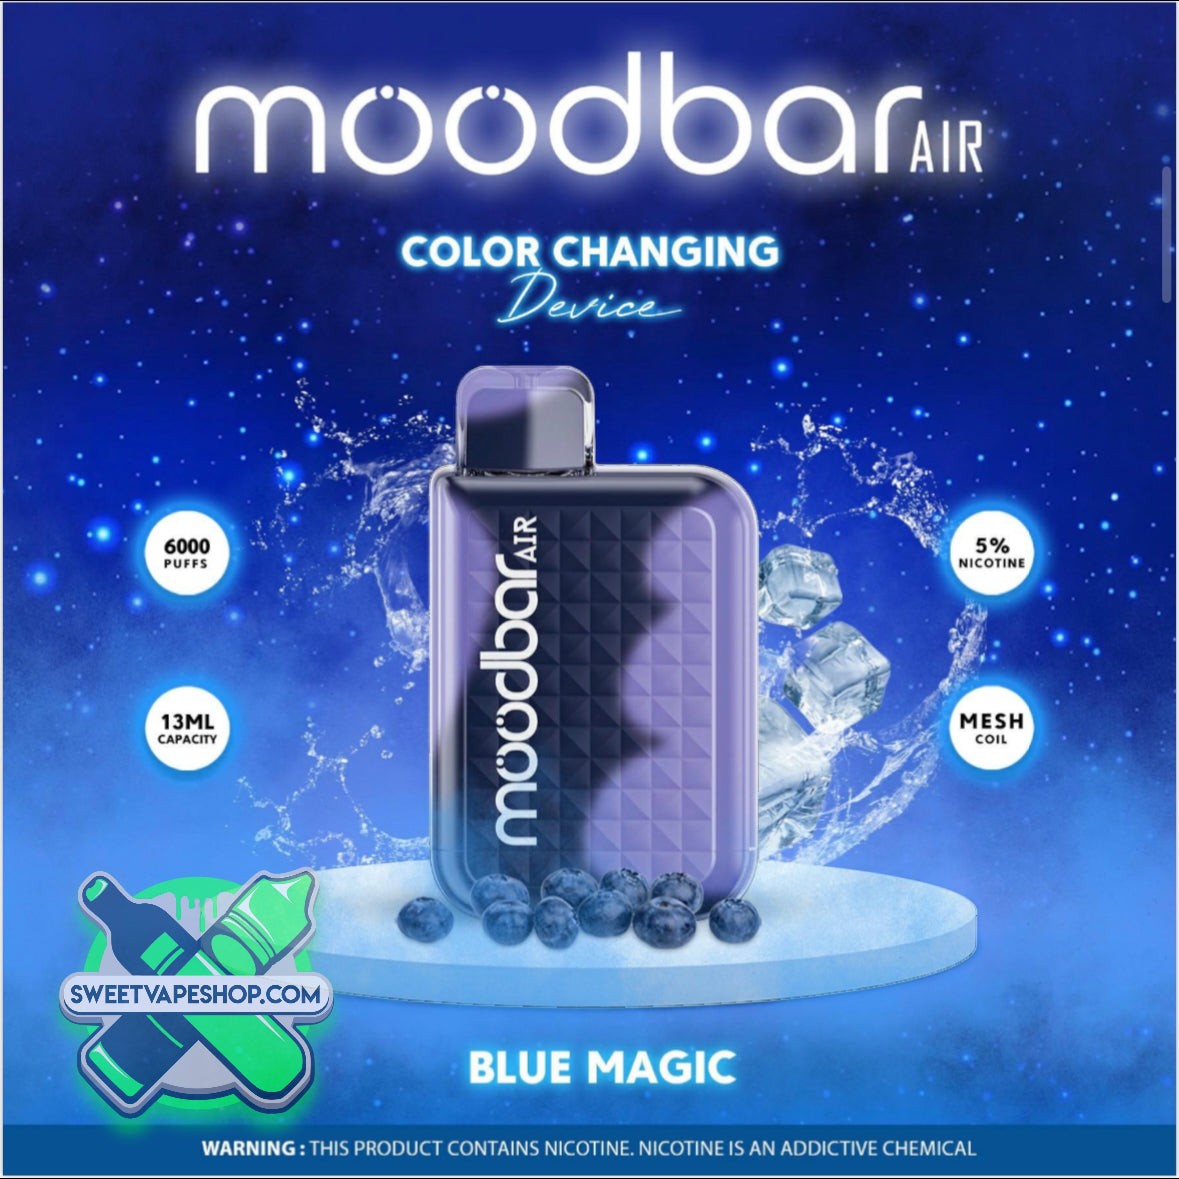 Mood Bar - Air Disposable 6000 Puffs